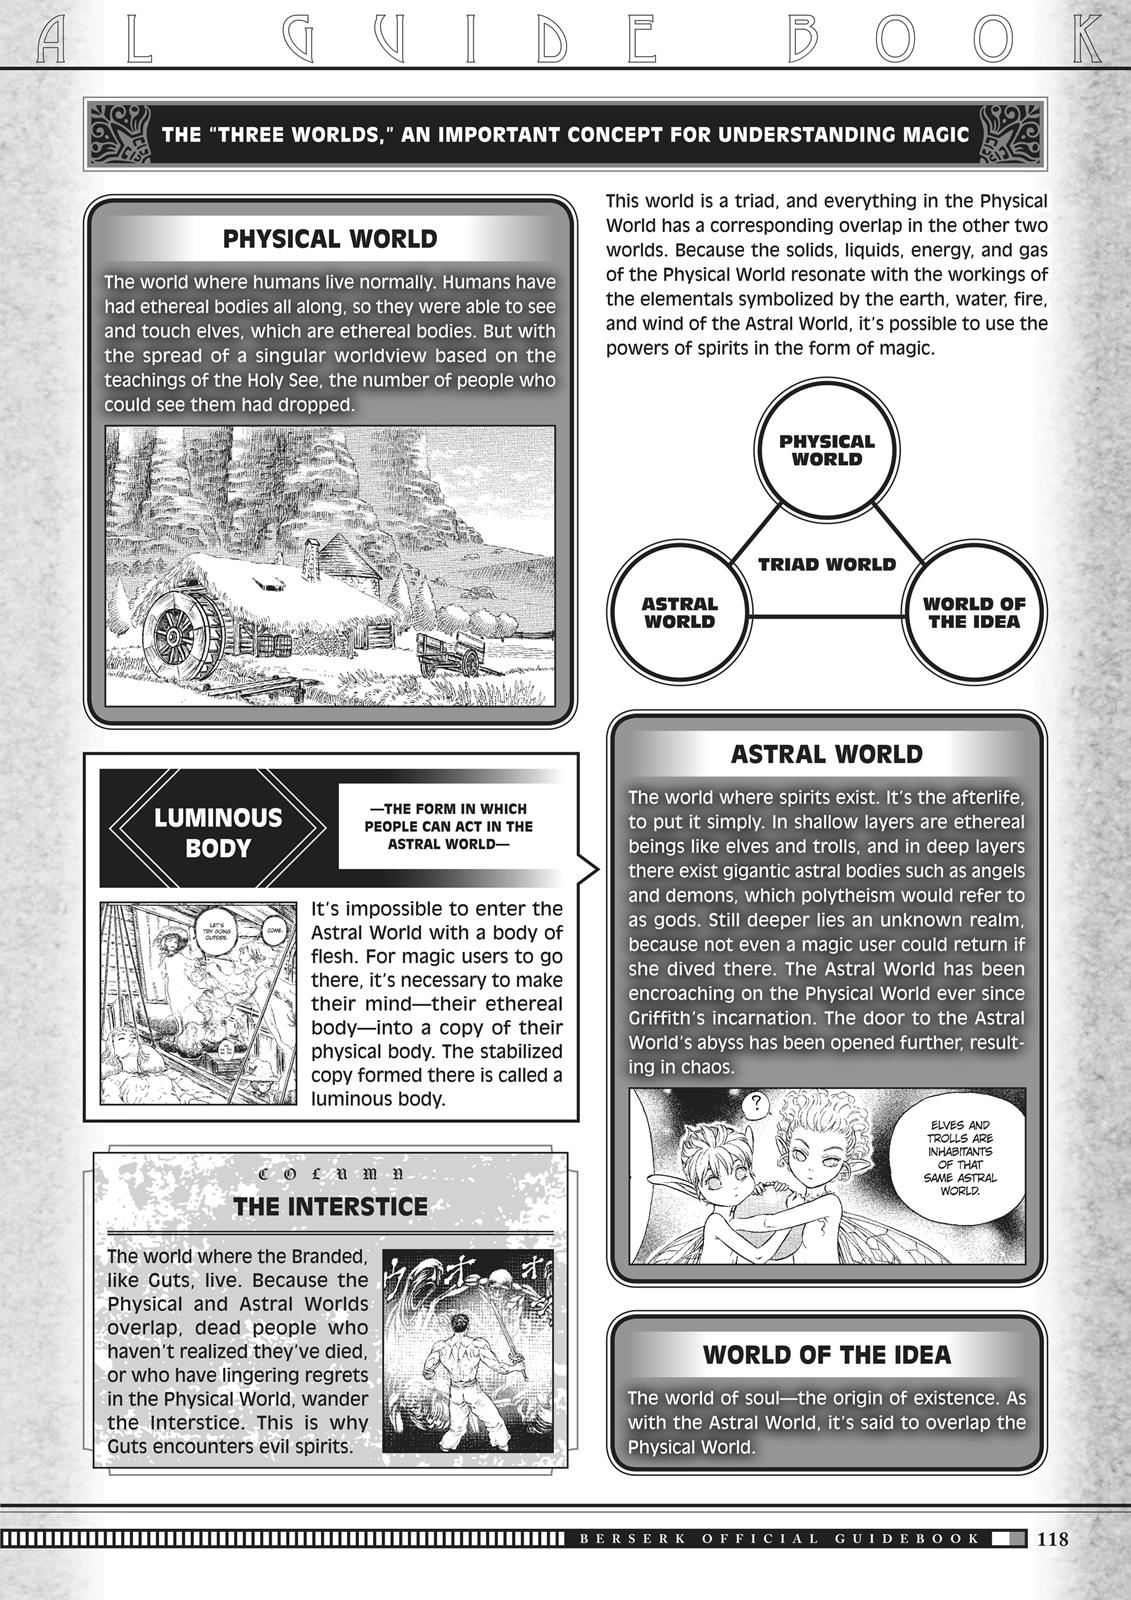 Berserk Manga Chapter 350.5 image 116